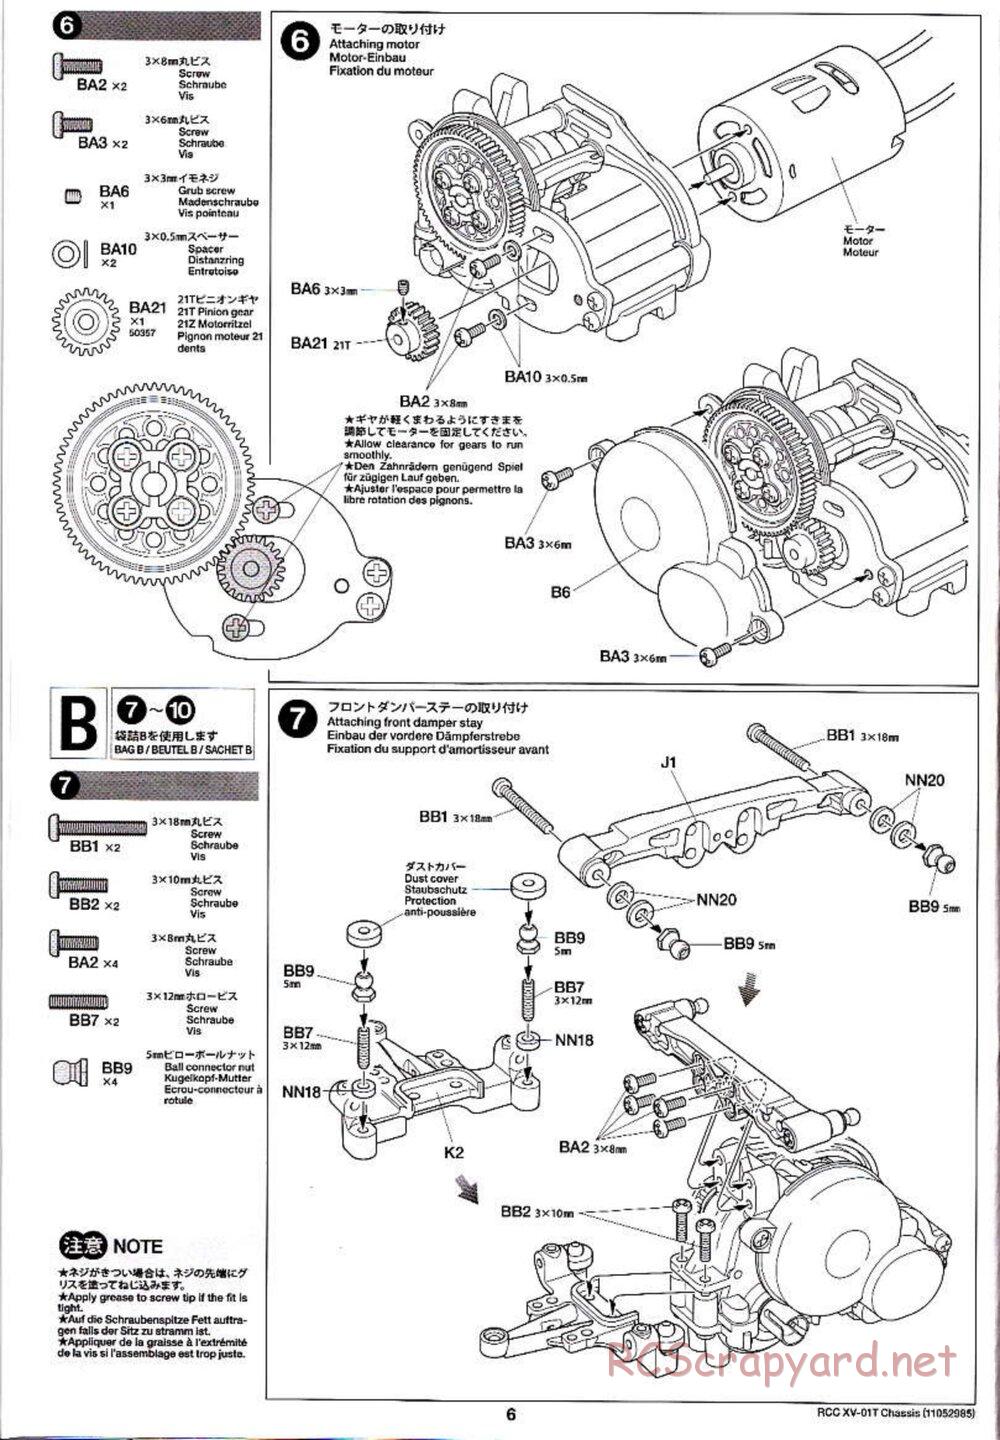 Tamiya - XV-01T Chassis - Manual - Page 6